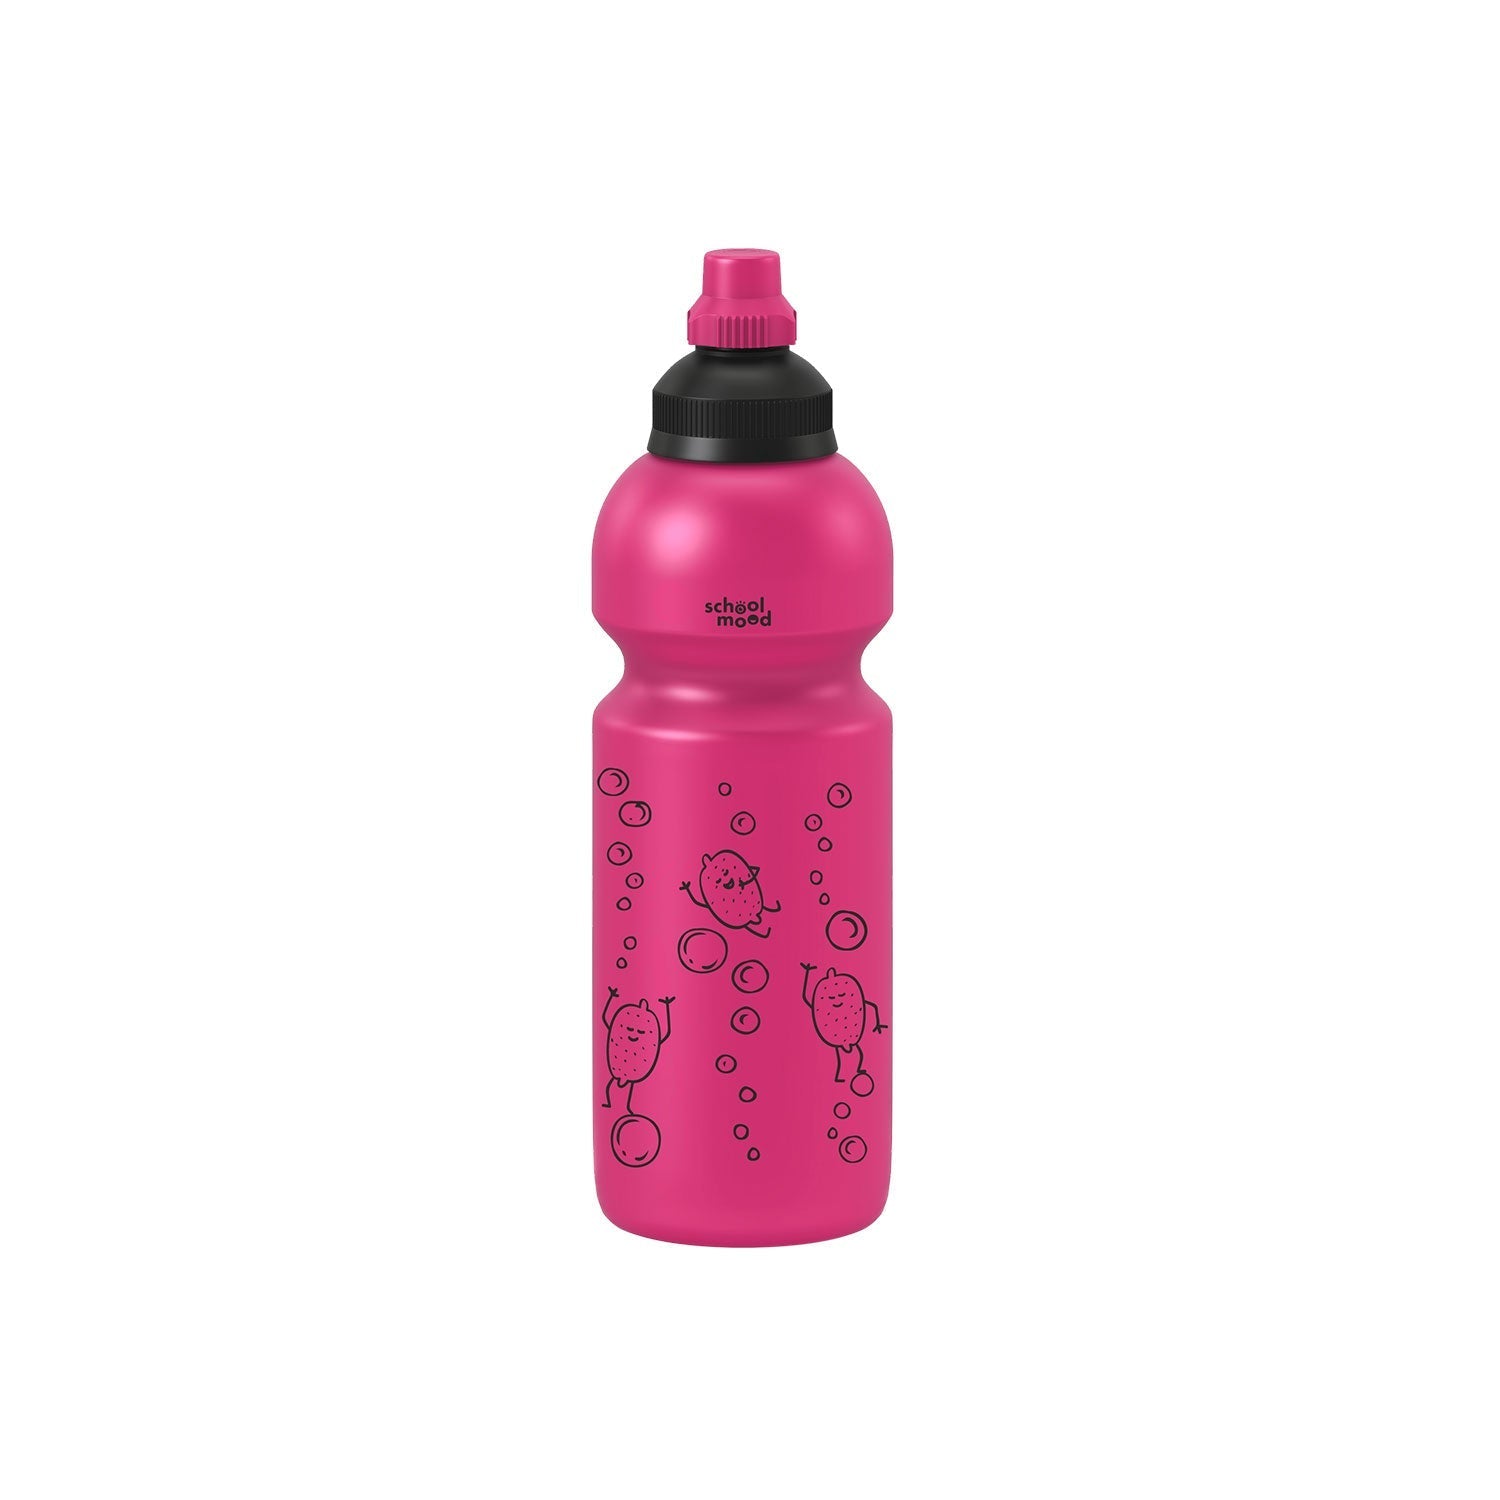 School Mood,Trinkflasche pink, 600 ml von Fachcenter Wagner - Nur €7.99! Entdecke mehr bei Fachcenter Wagner